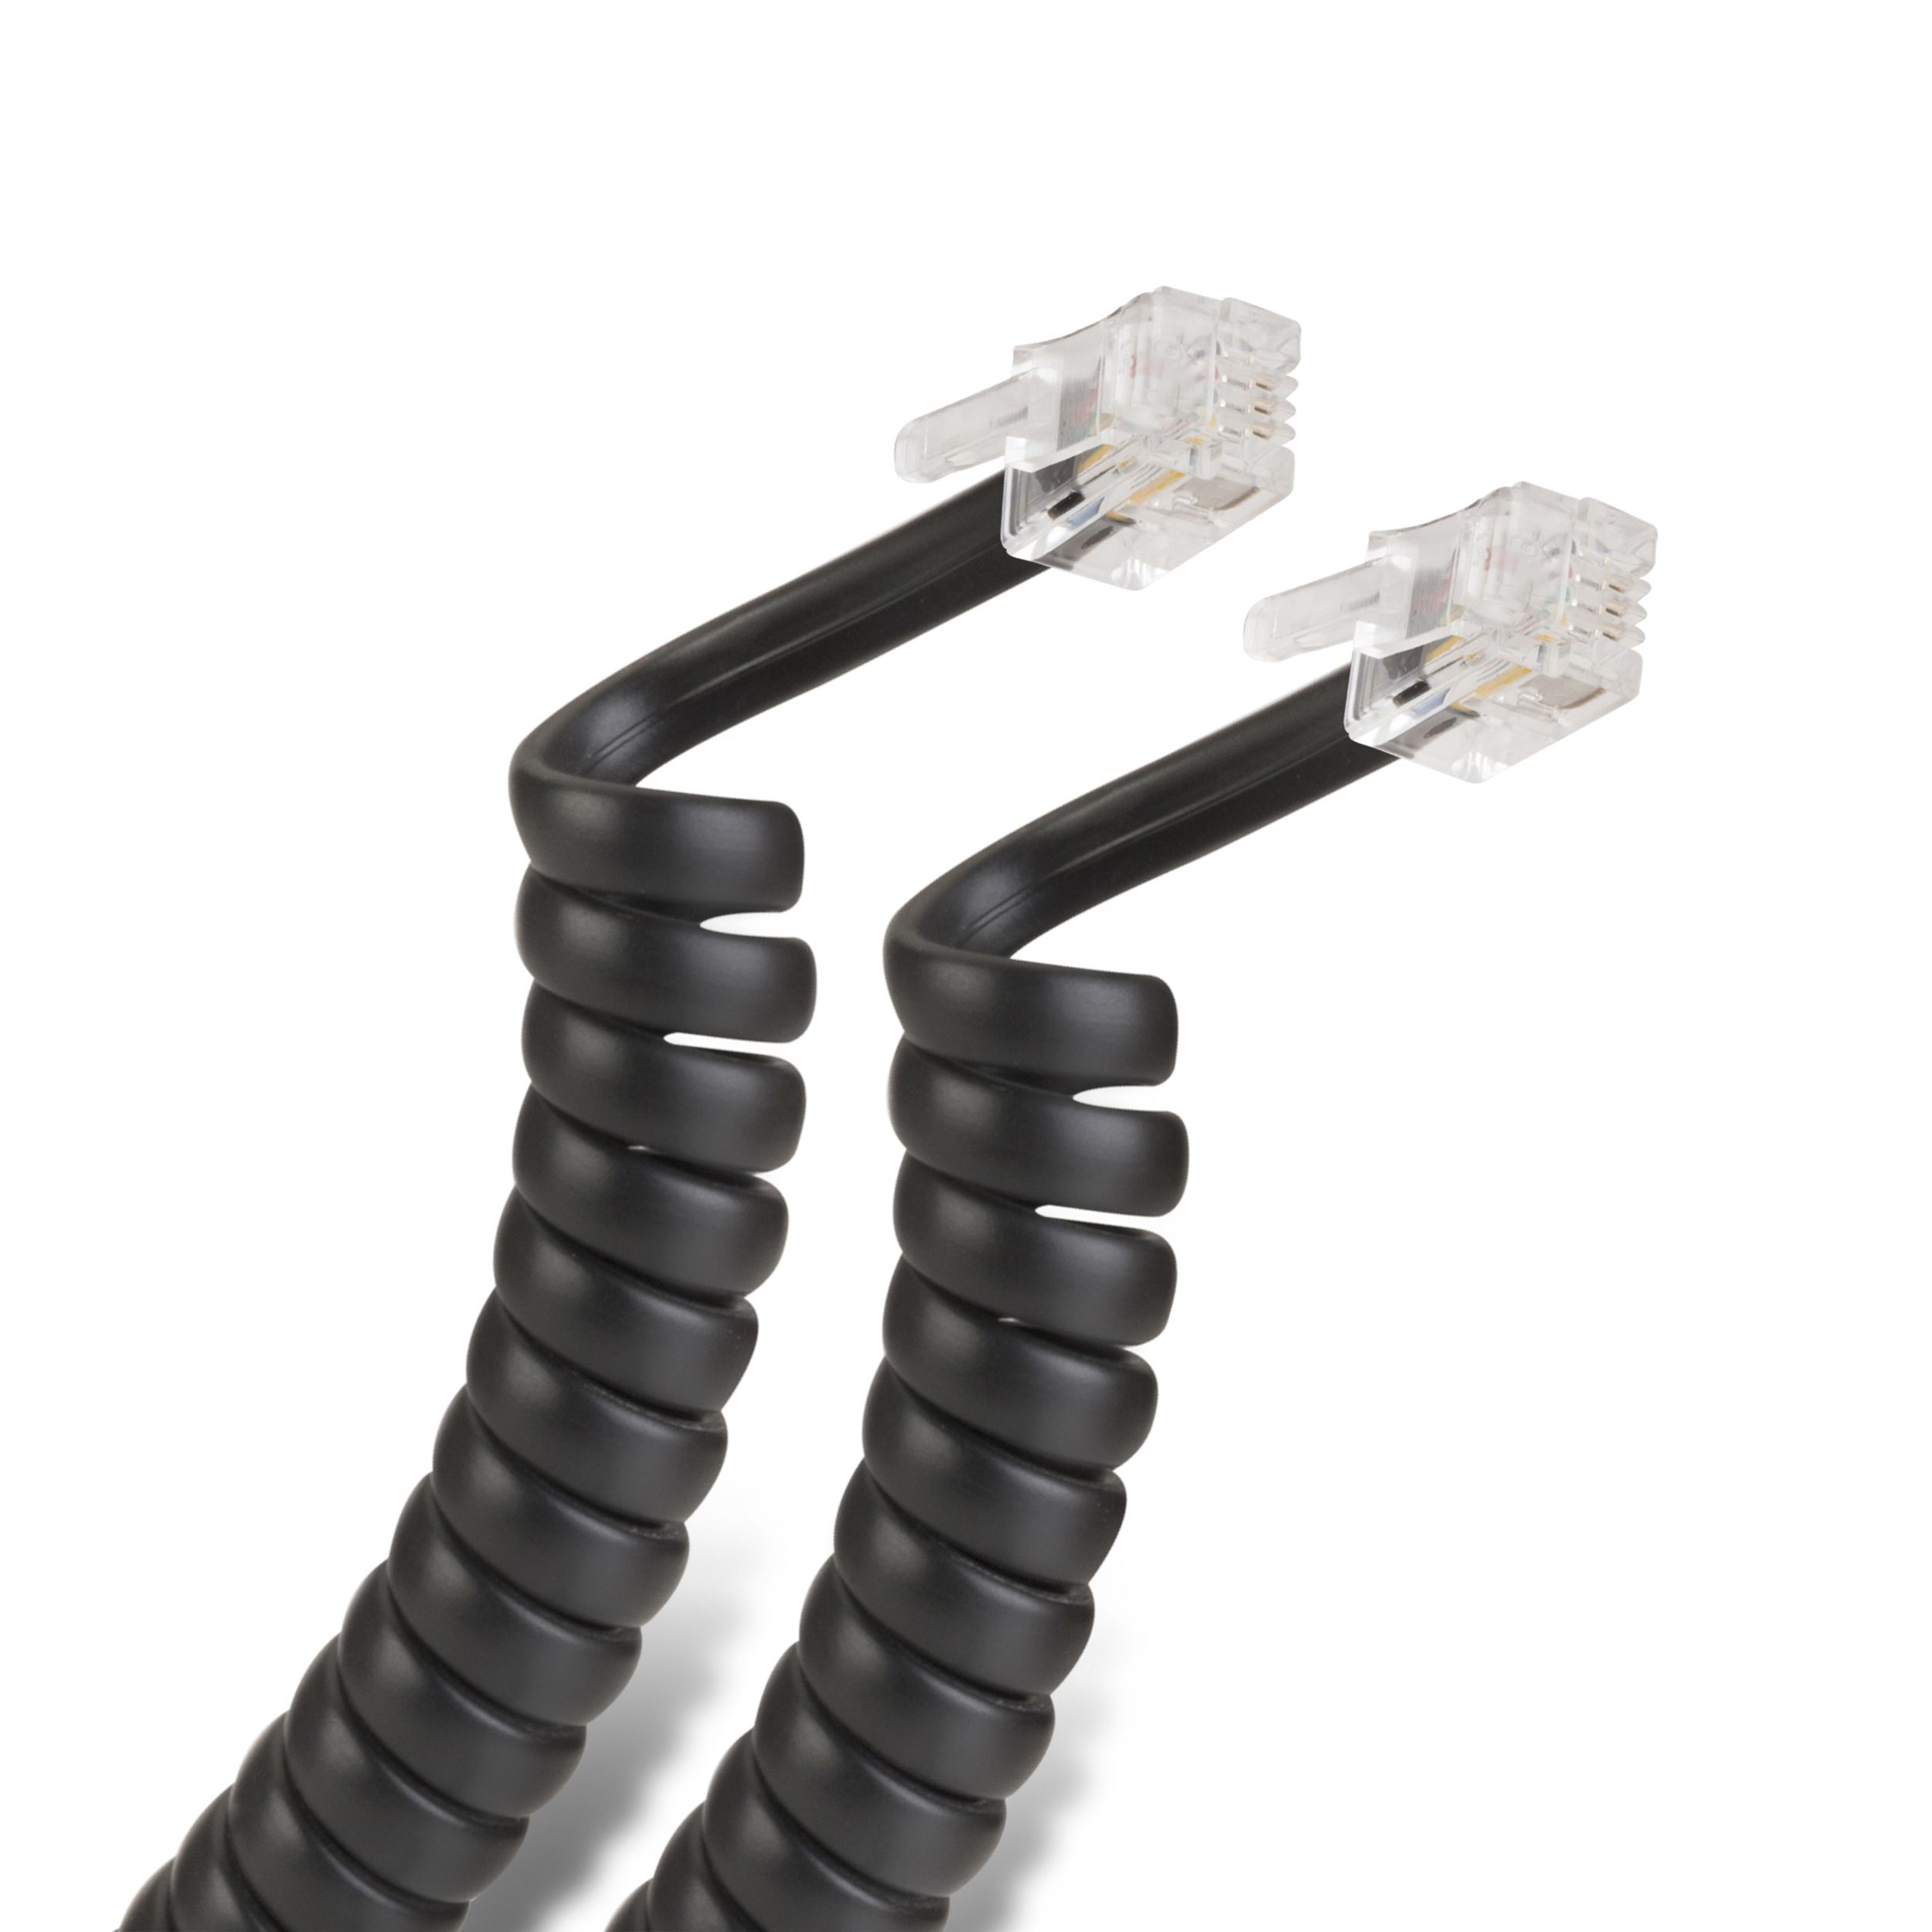 Cable de alimentación (Interlock), de 2 m Steren Tienda